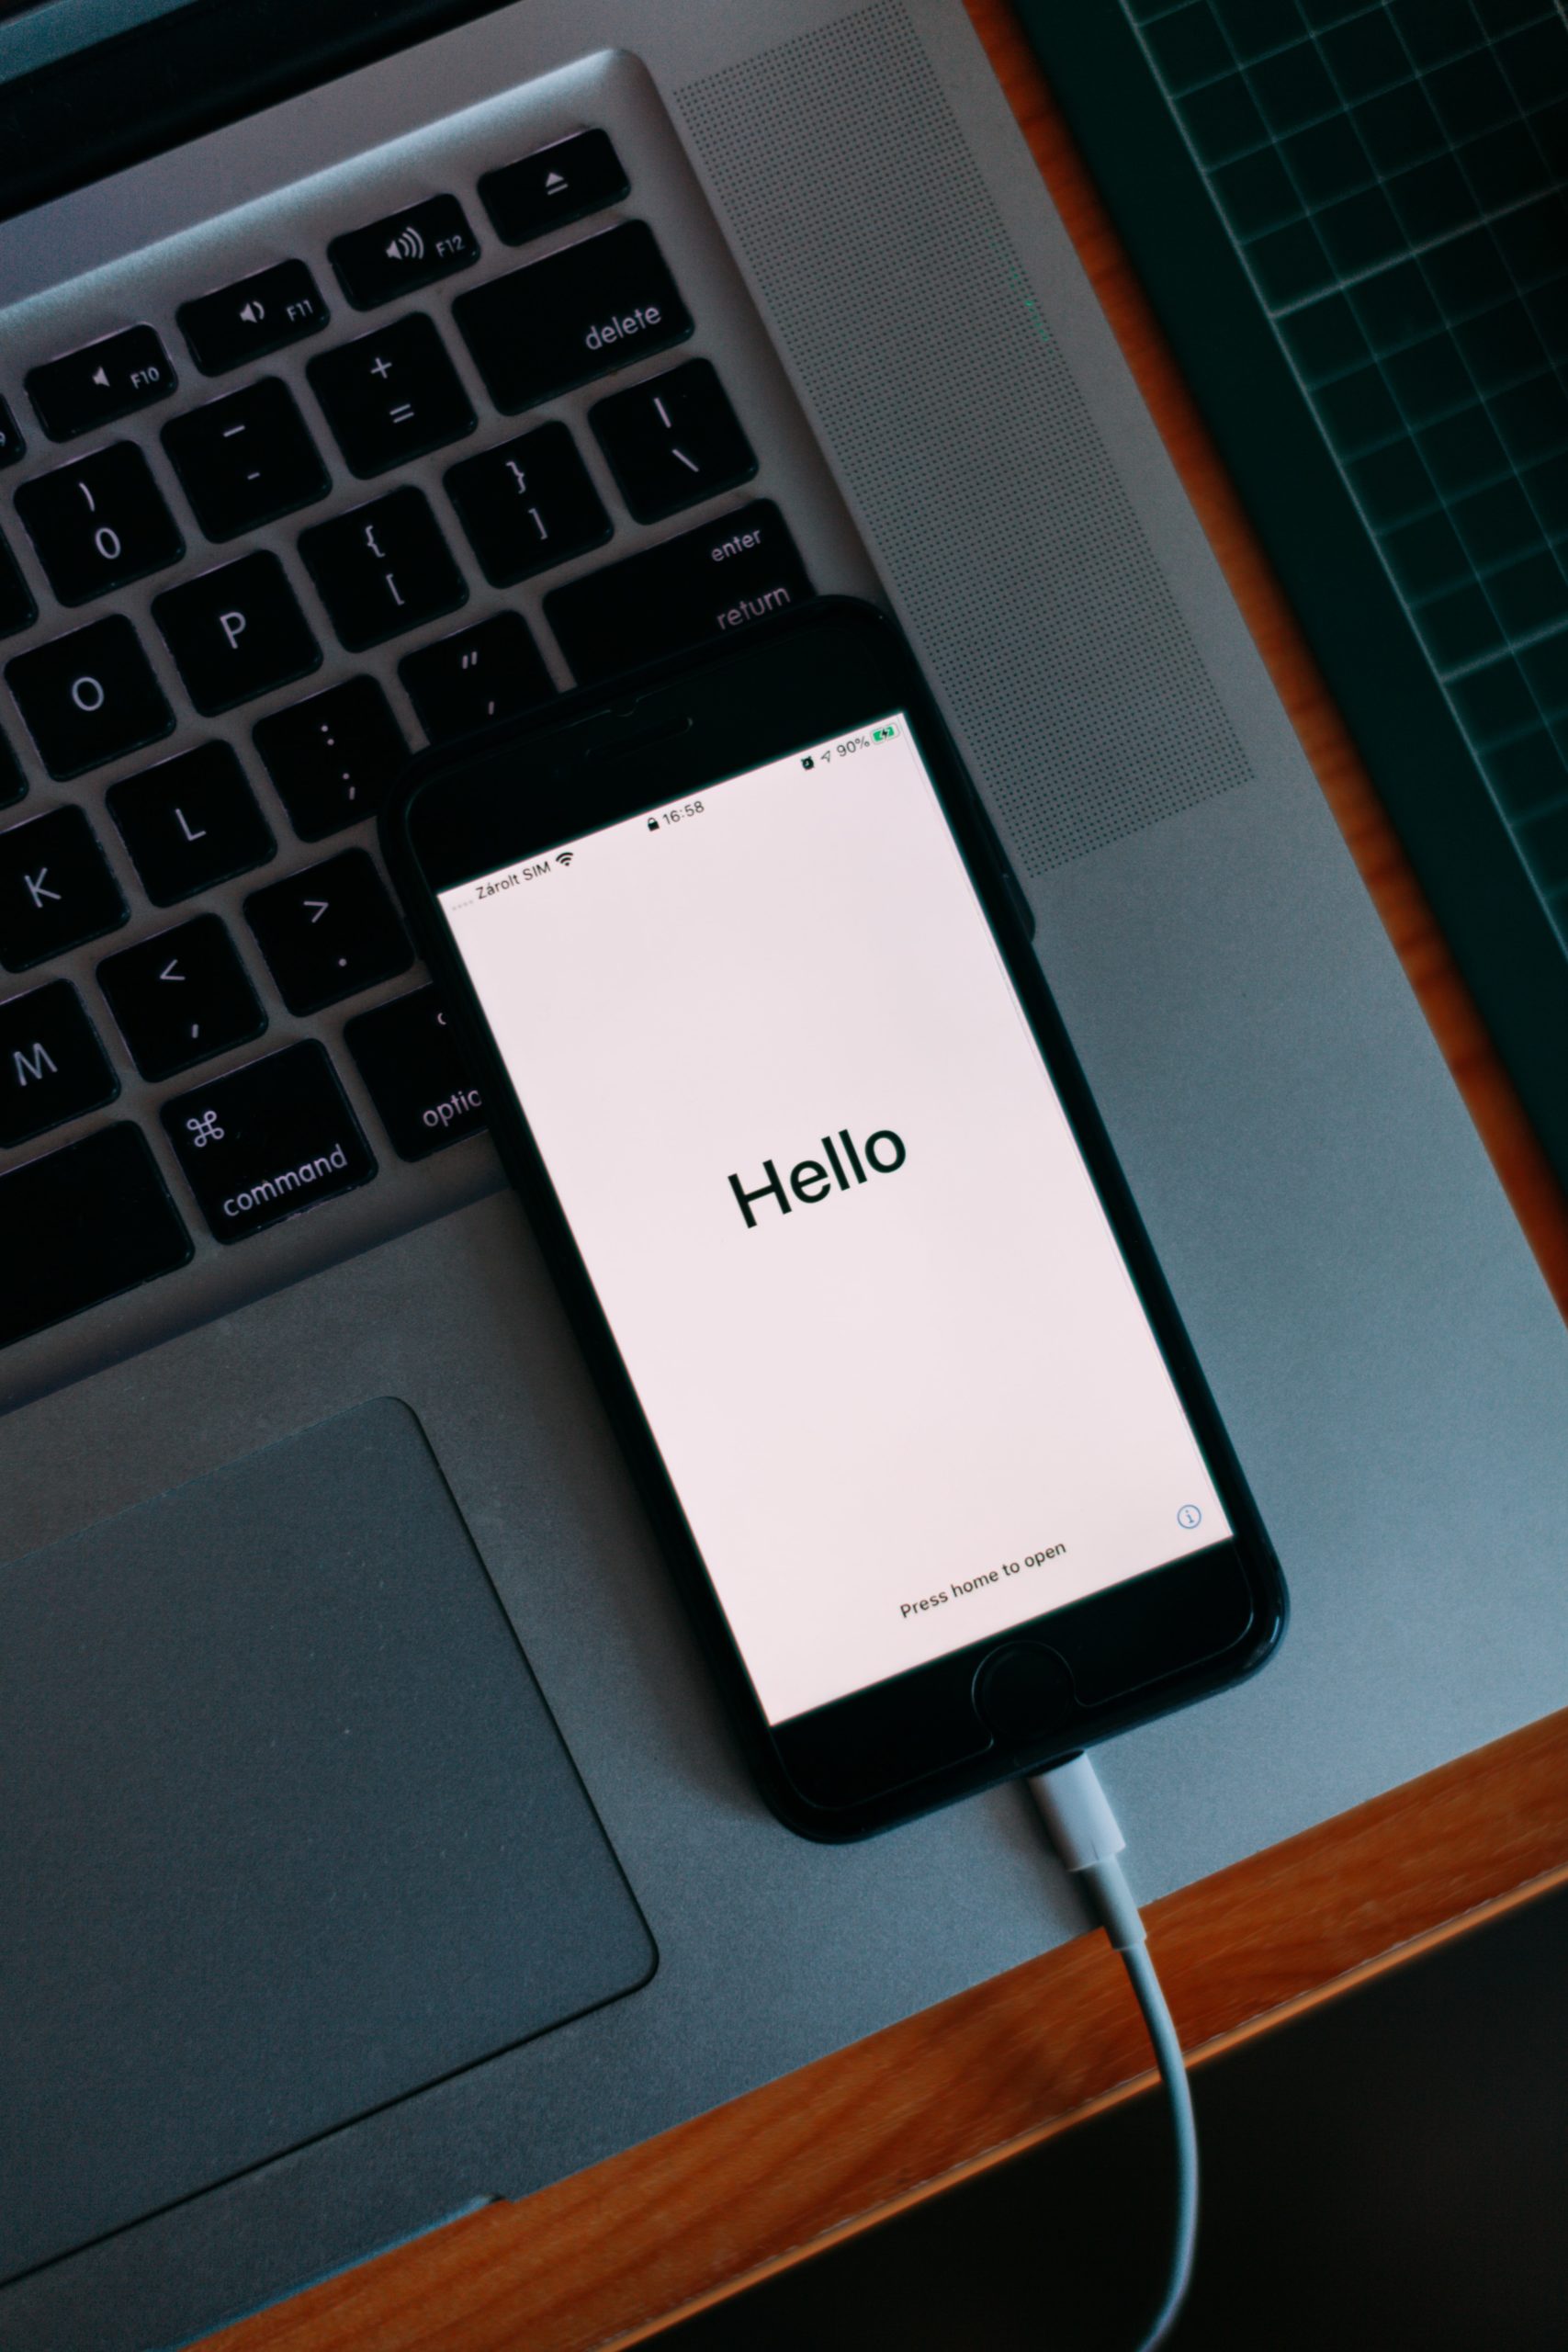 smartphone texte "hello" / bienvenu